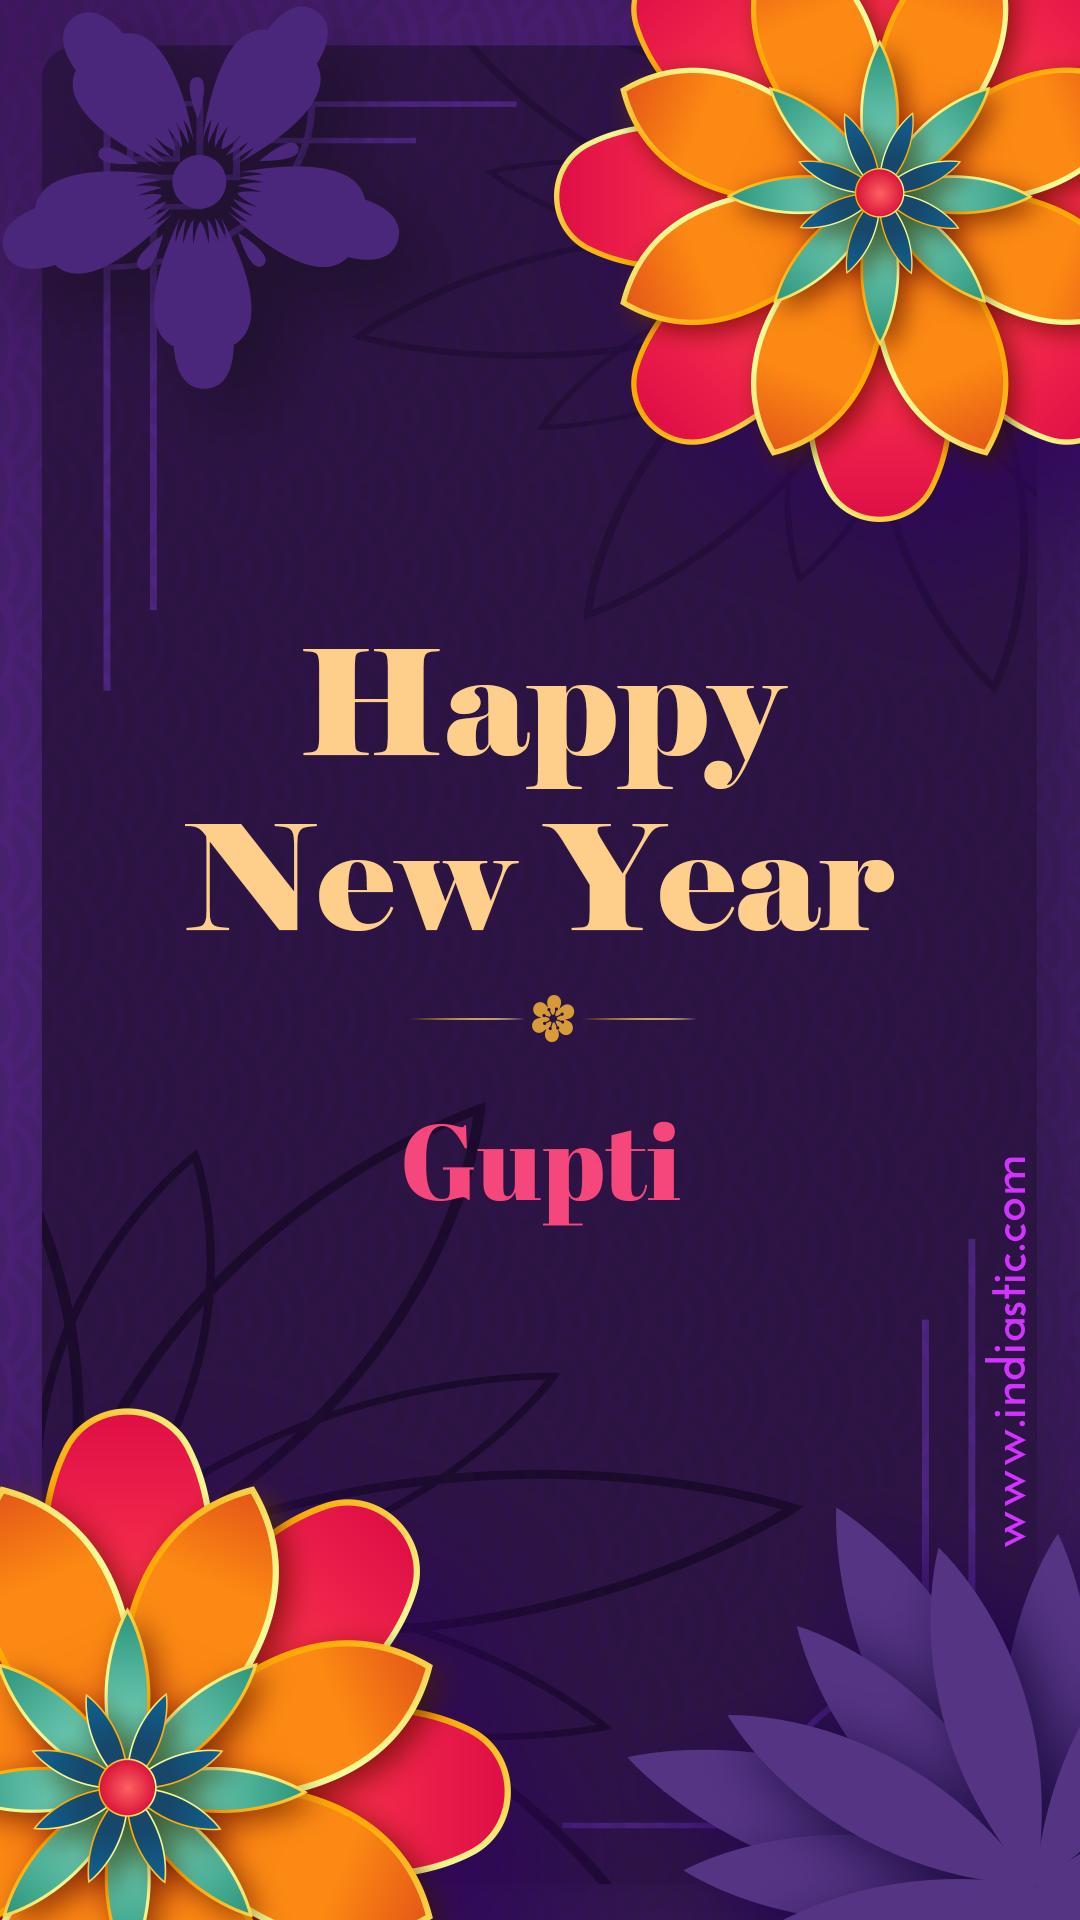 Happy new years Gupti images